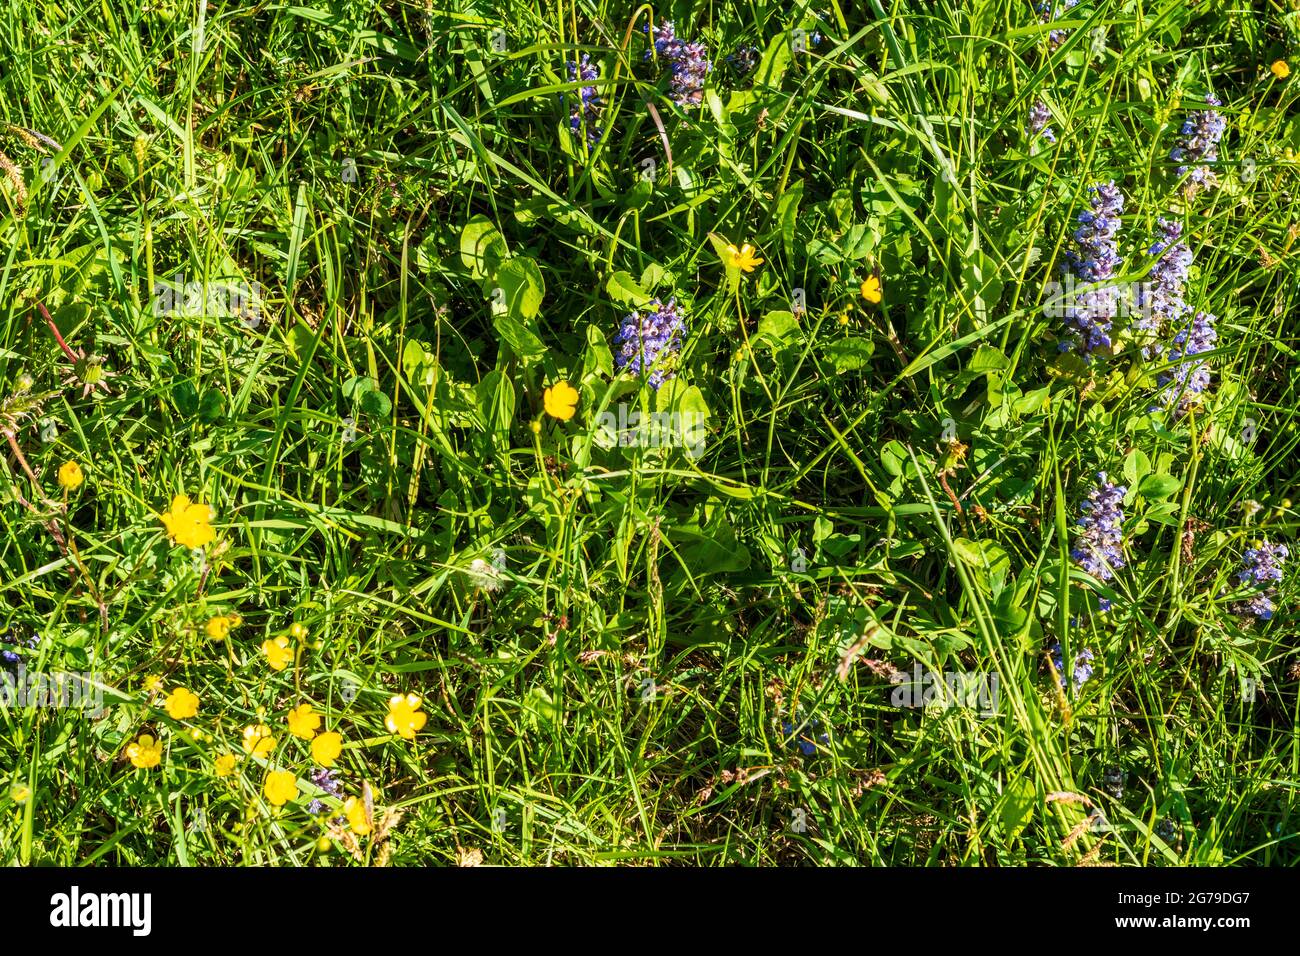 Waidhofen an der Ybbs, flowers Kriechender Günsel (Ajuga reptans) and Scharfer Hahnenfuß (Ranunculus acris) at meadow in Mostviertel region, Niederösterreich / Lower Austria, Austria Stock Photo